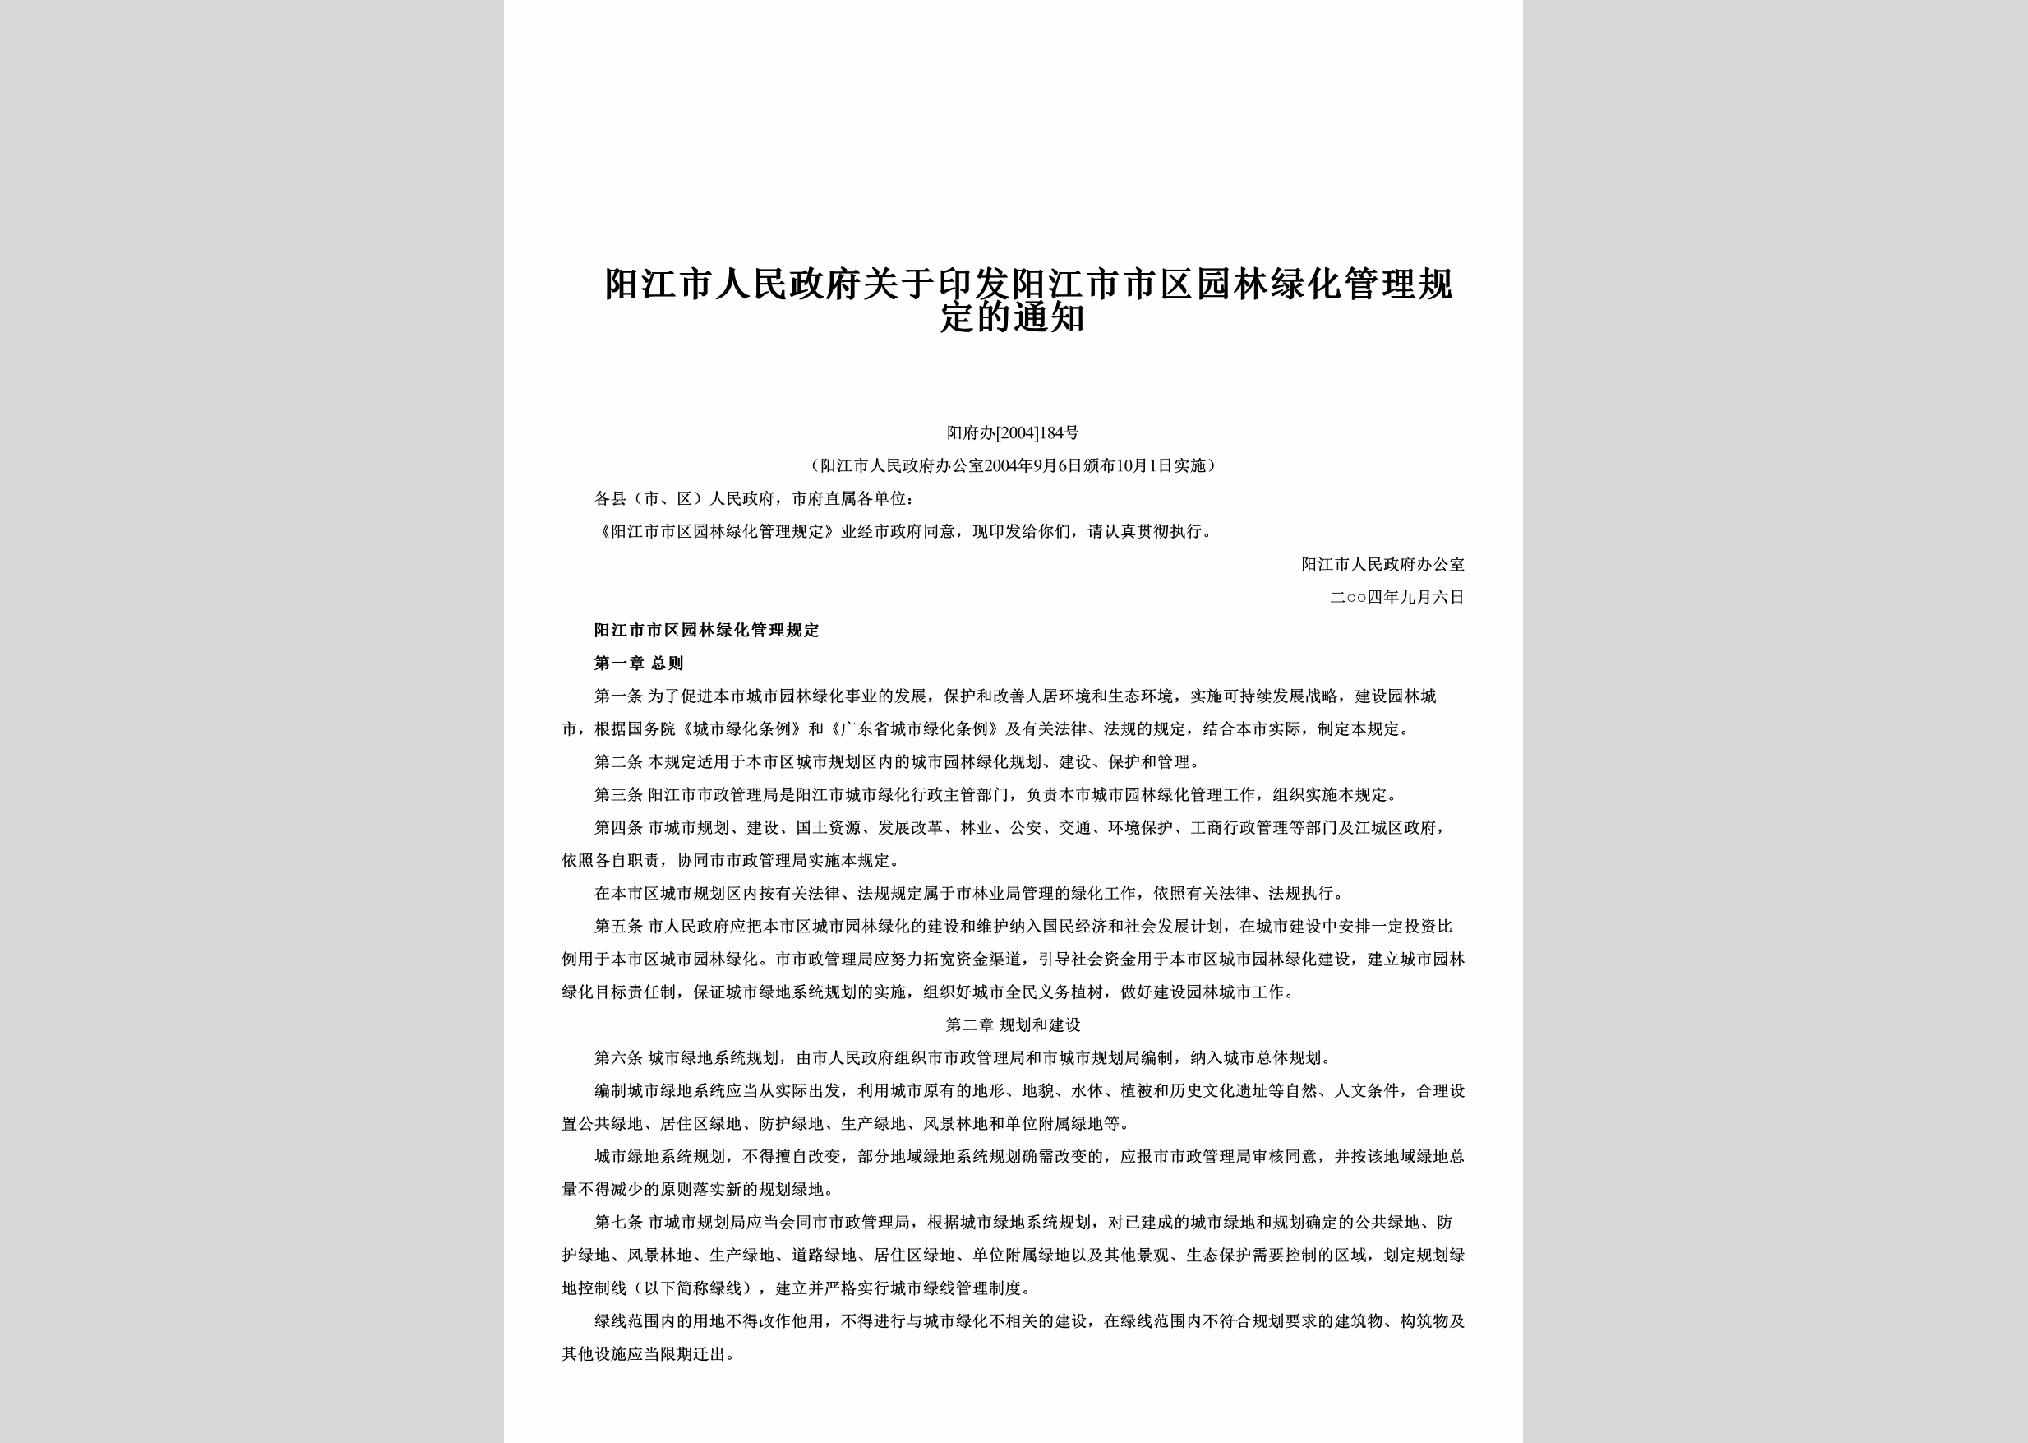 阳府办[2004]184号：关于印发阳江市市区园林绿化管理规定的通知